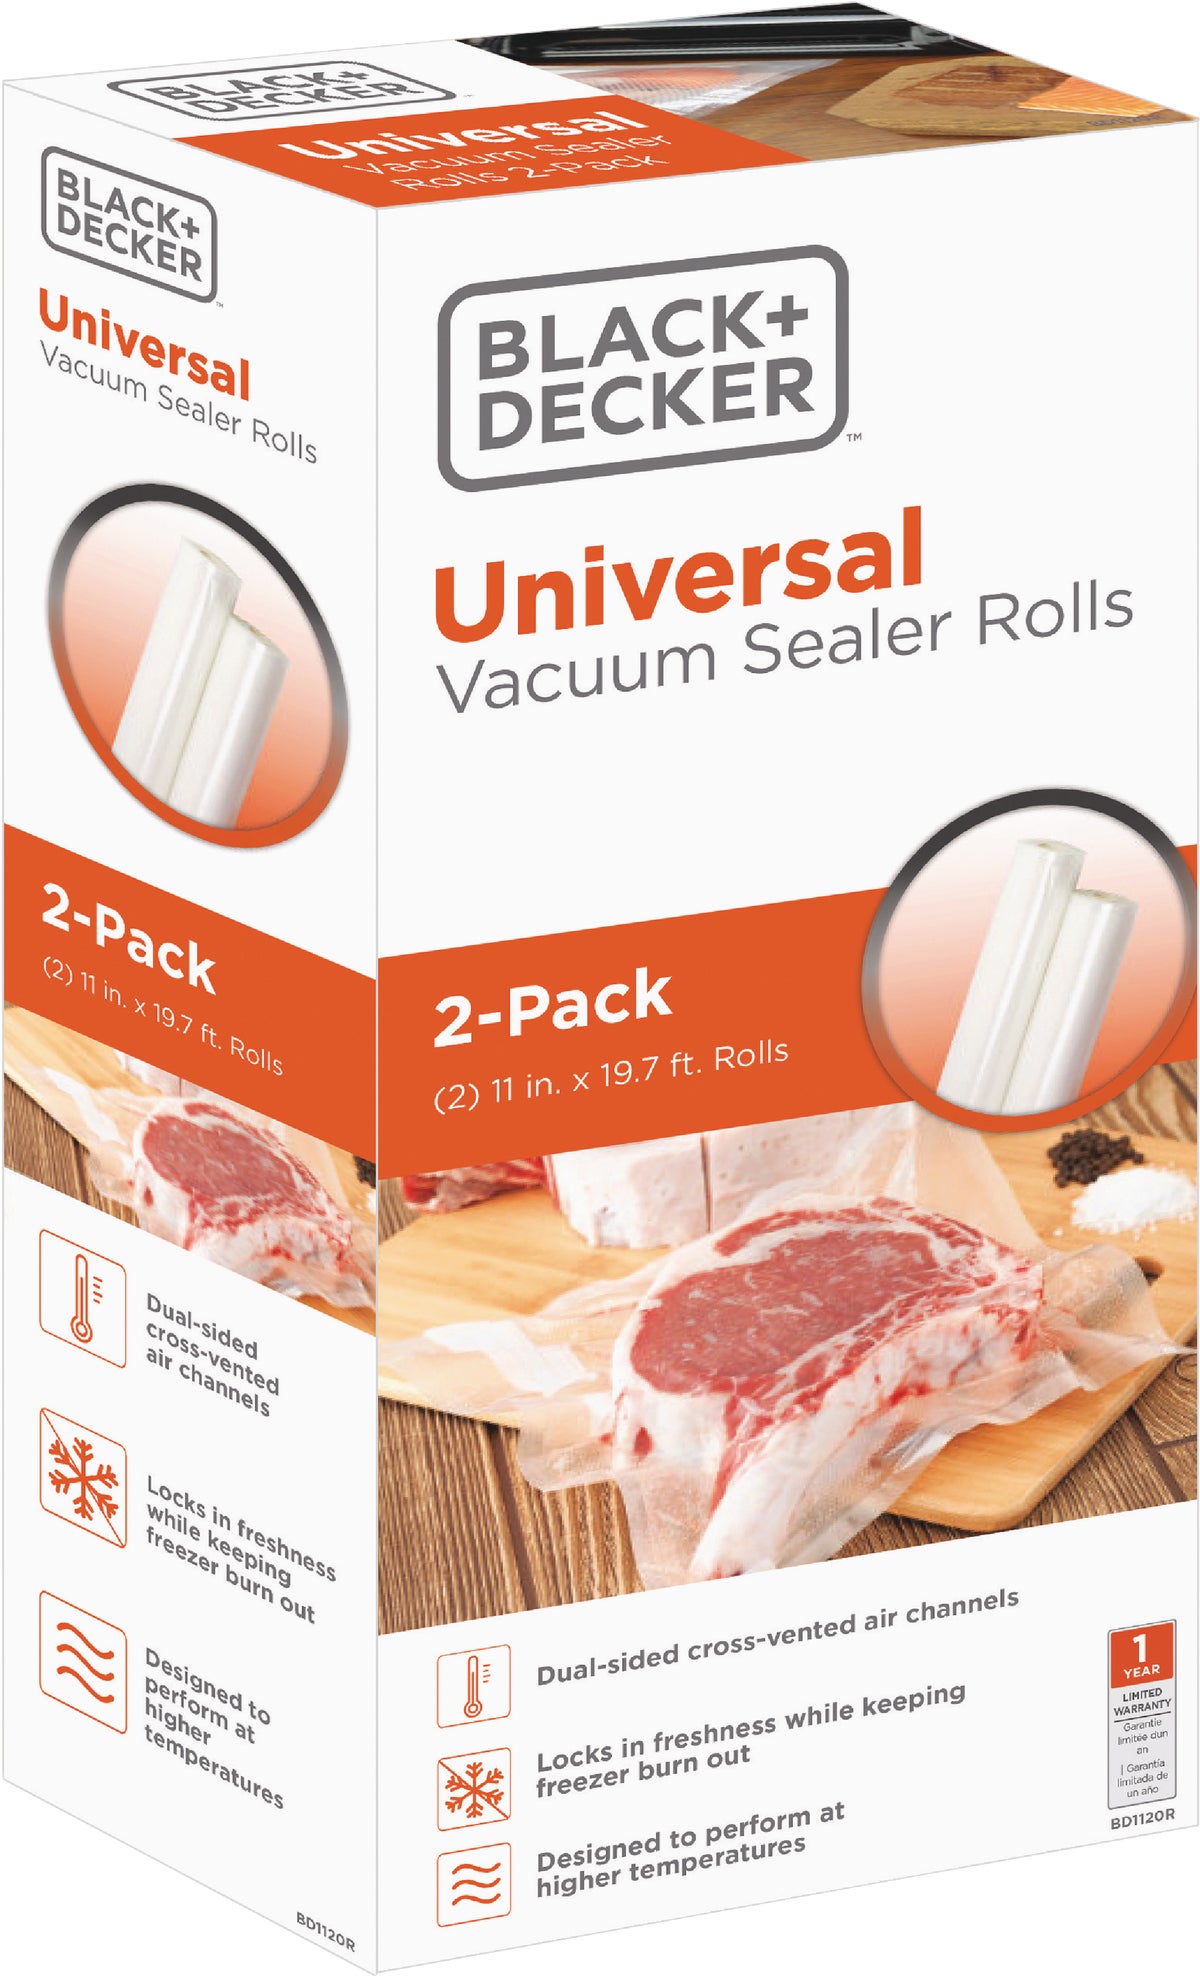 Black & Decker Classic Vacuum Sealer